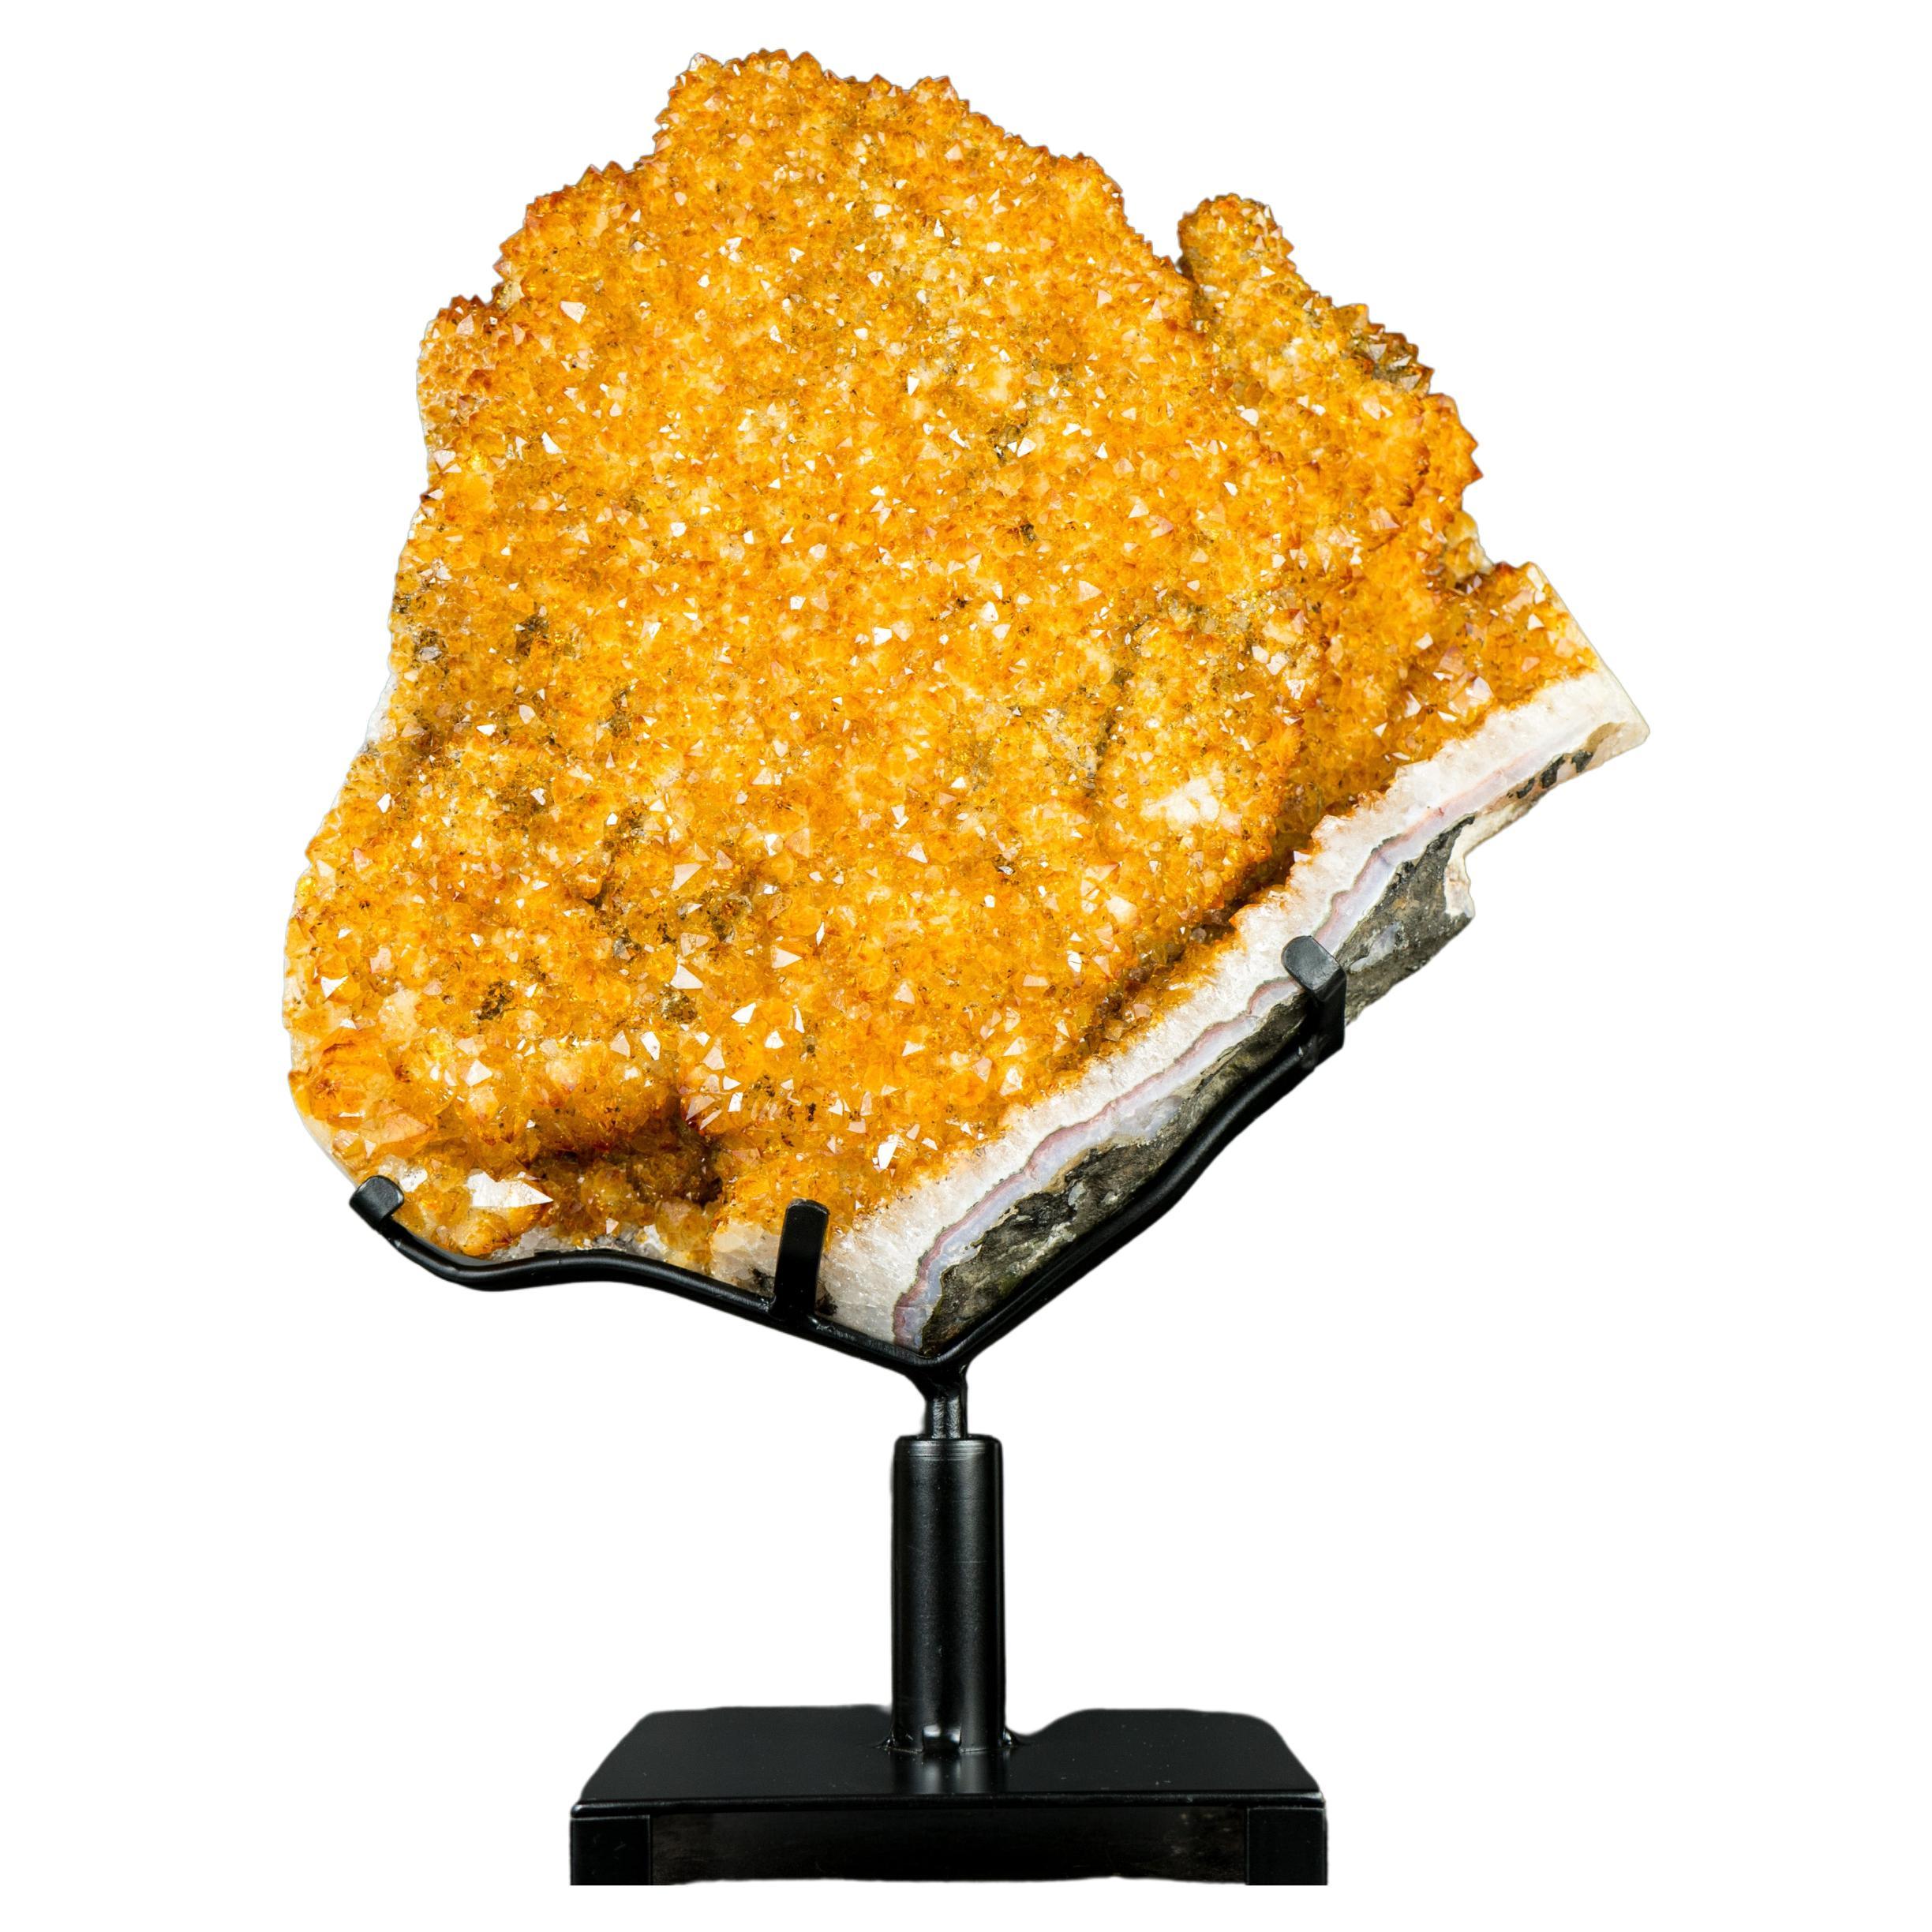 Citrine Flower Specimen with High-Grade Sparkling Golden Orange Druzy on Stand